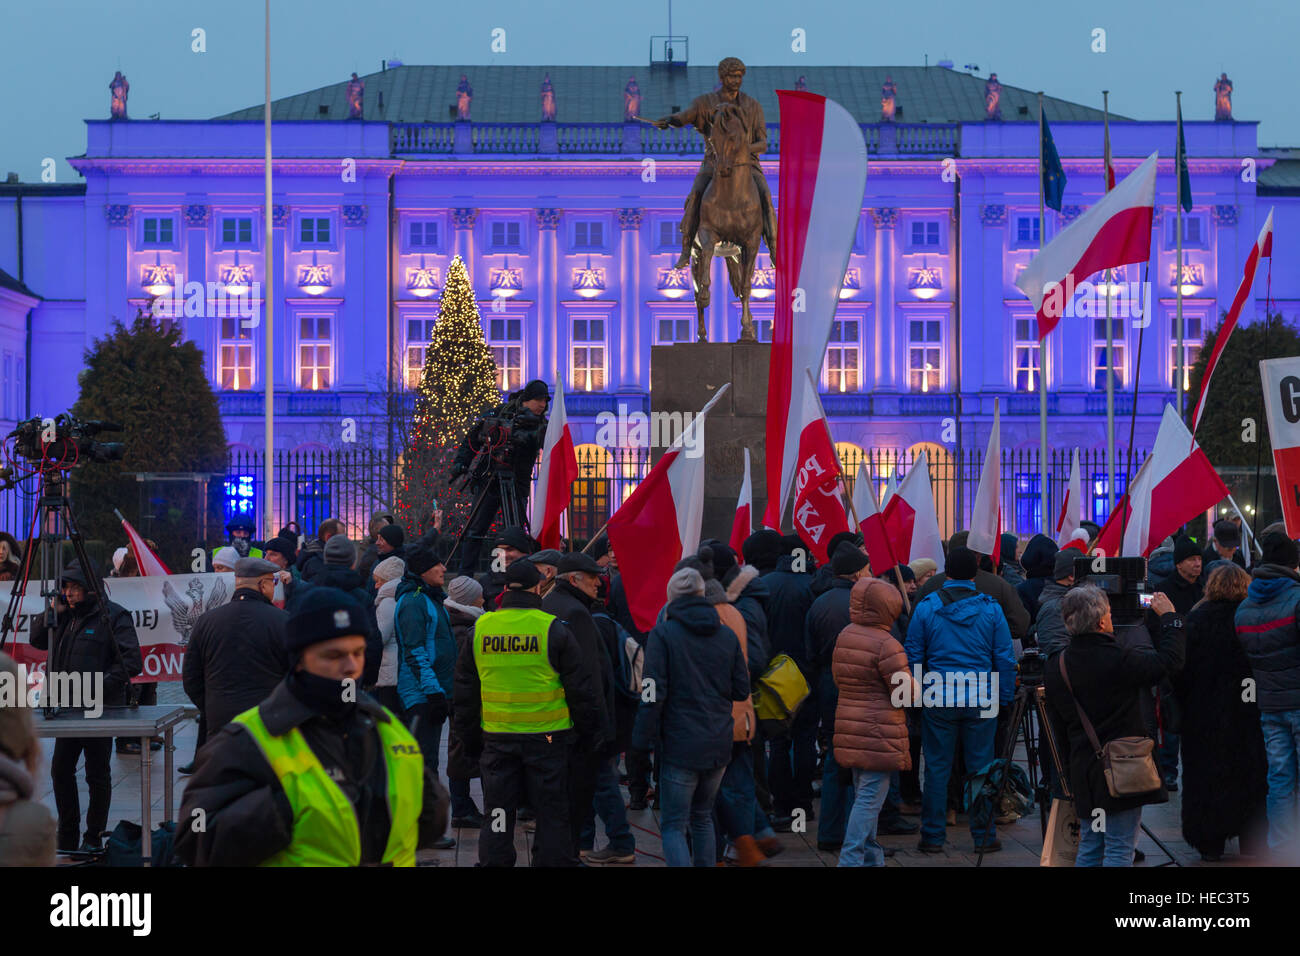 Luchar por la democracia polaca. Protesta y piquete frente al Palacio Presidencial. Los manifestantes contra el poder político actual Foto de stock